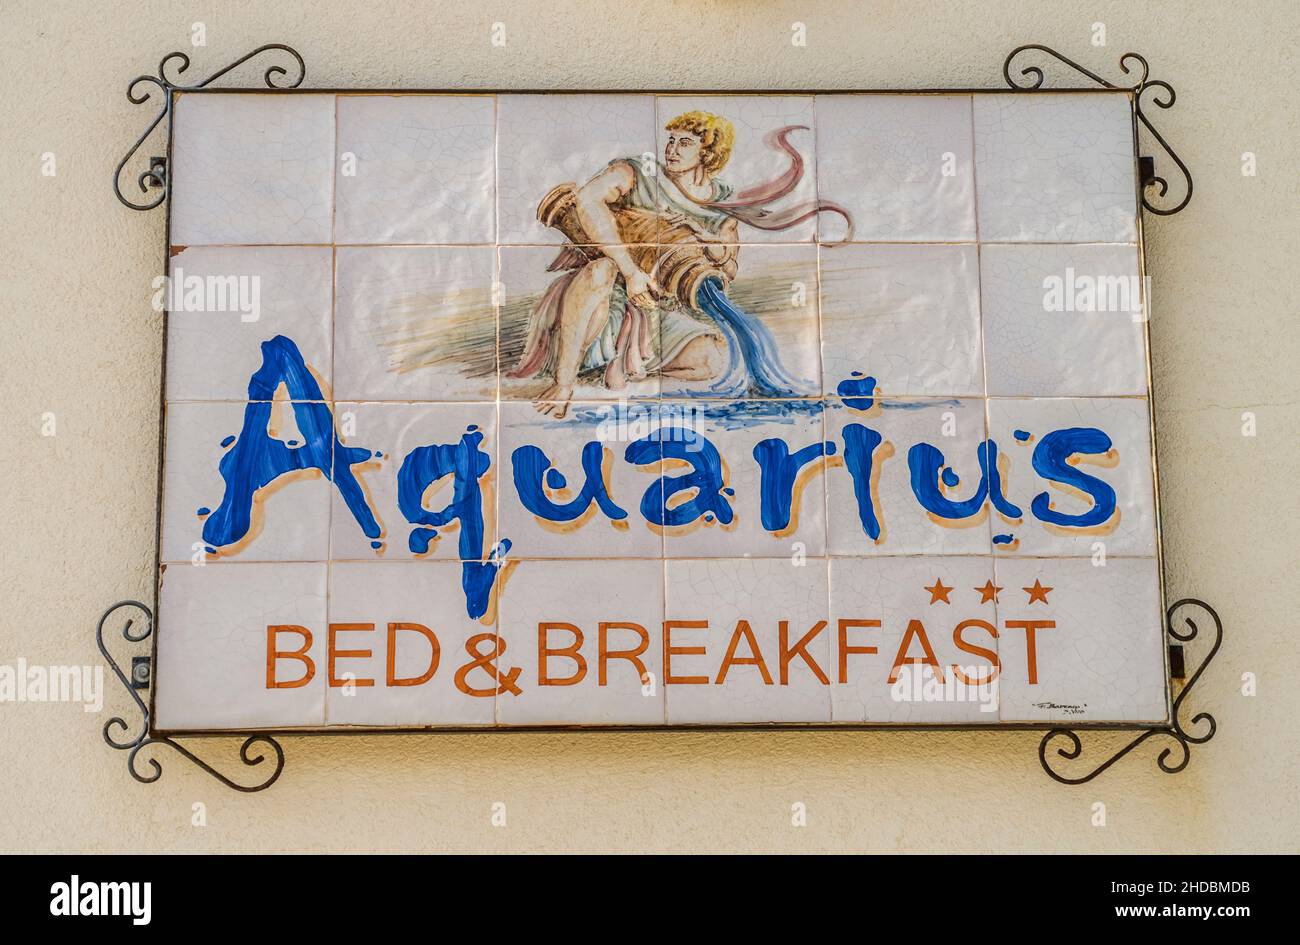 Werbeschild Hotel Aquarius, San Vito lo Capo, Sizilien, Italien Foto Stock